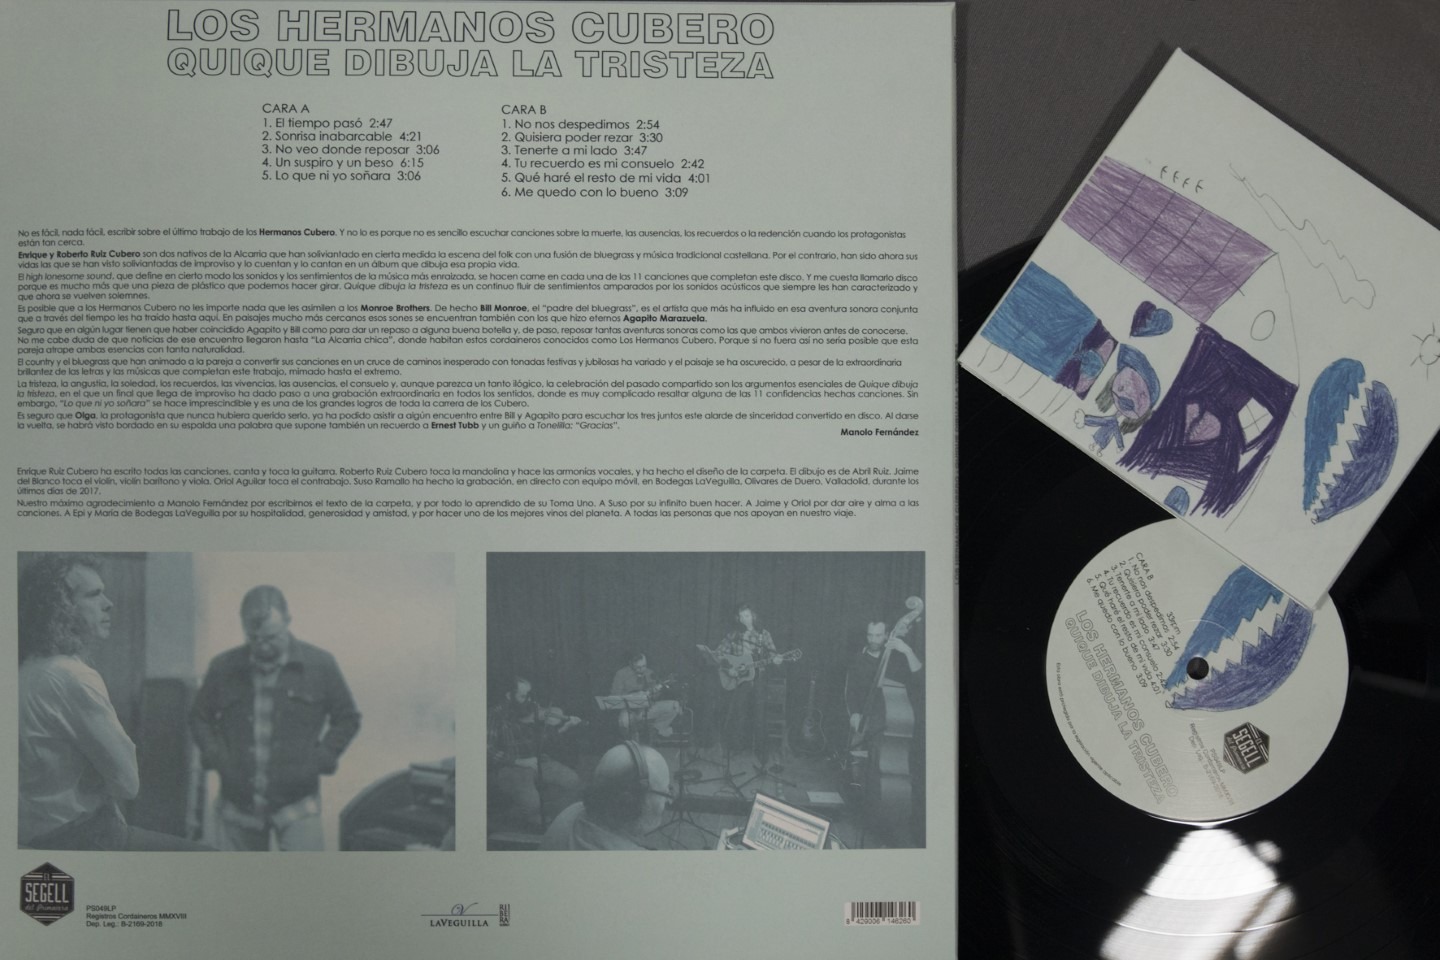 Los hermanos cubero | prensado vinilo y CD digisleeve | wolfpack iberia